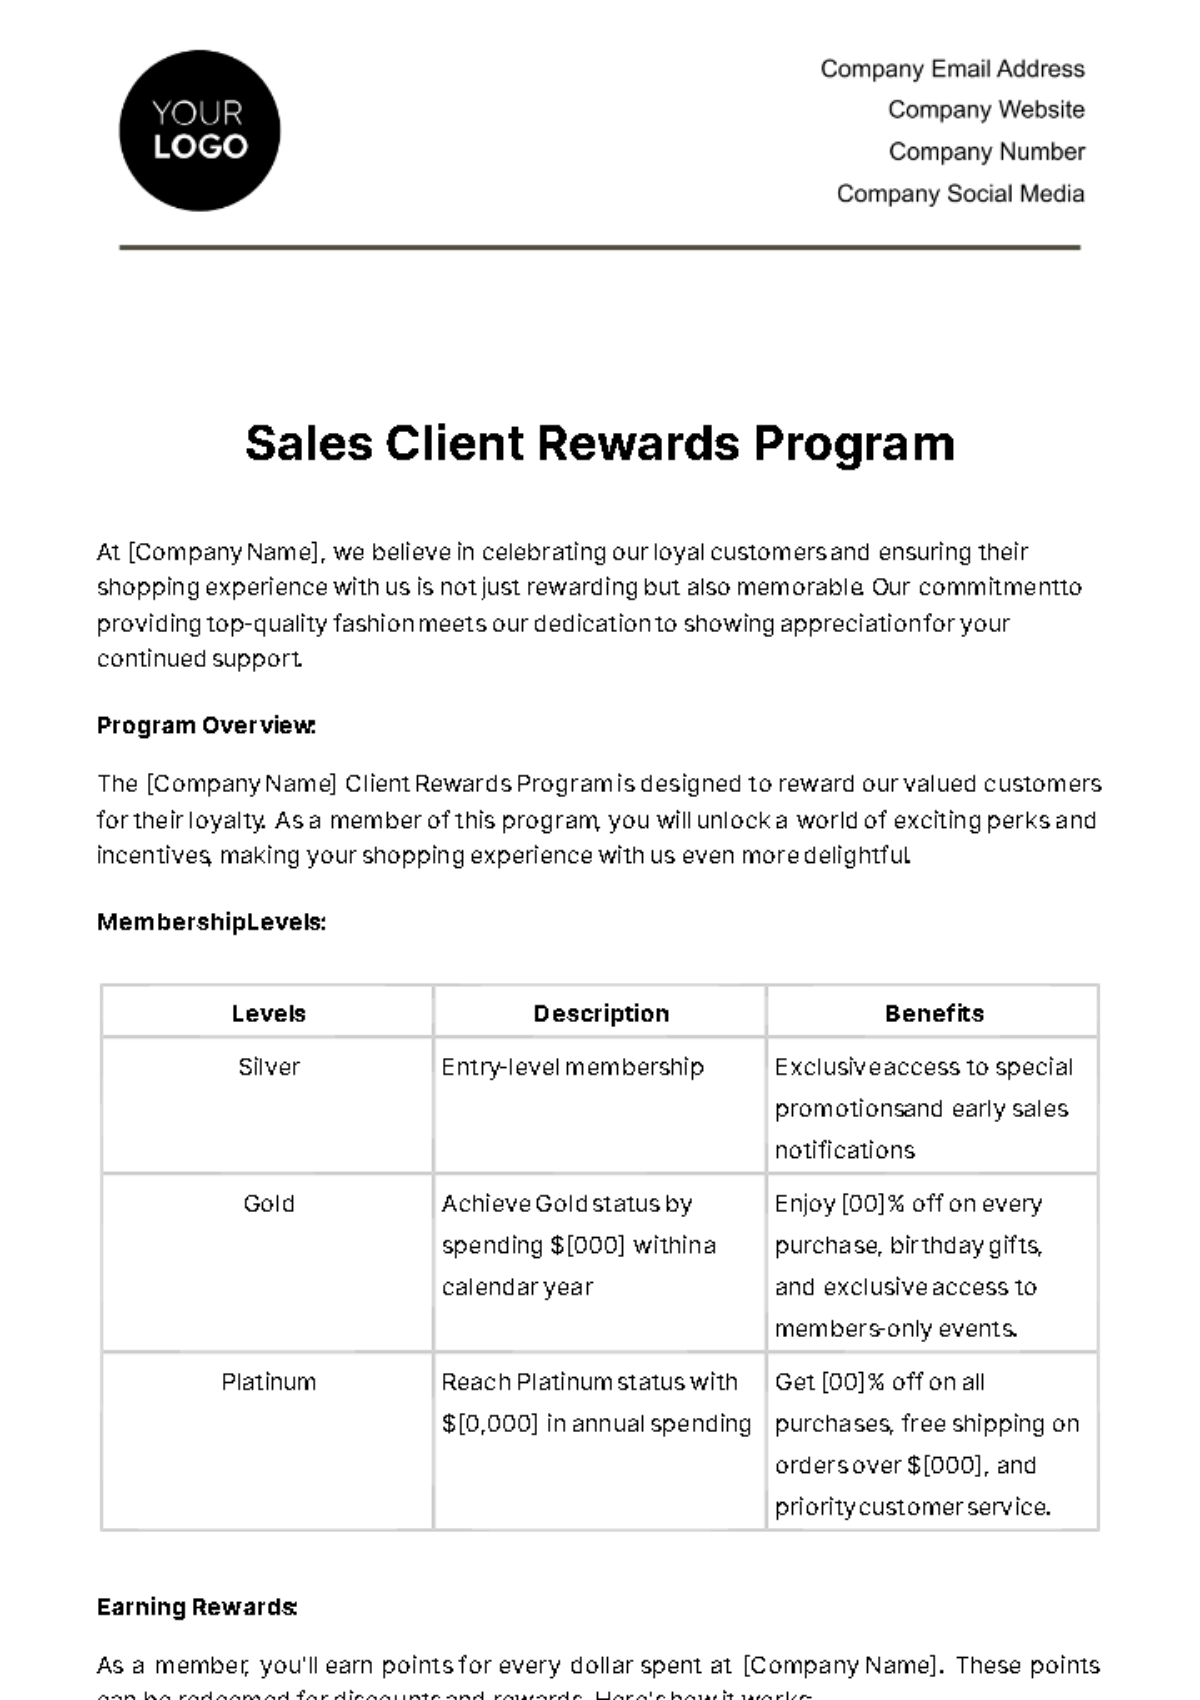 Free Sales Client Rewards Program Template